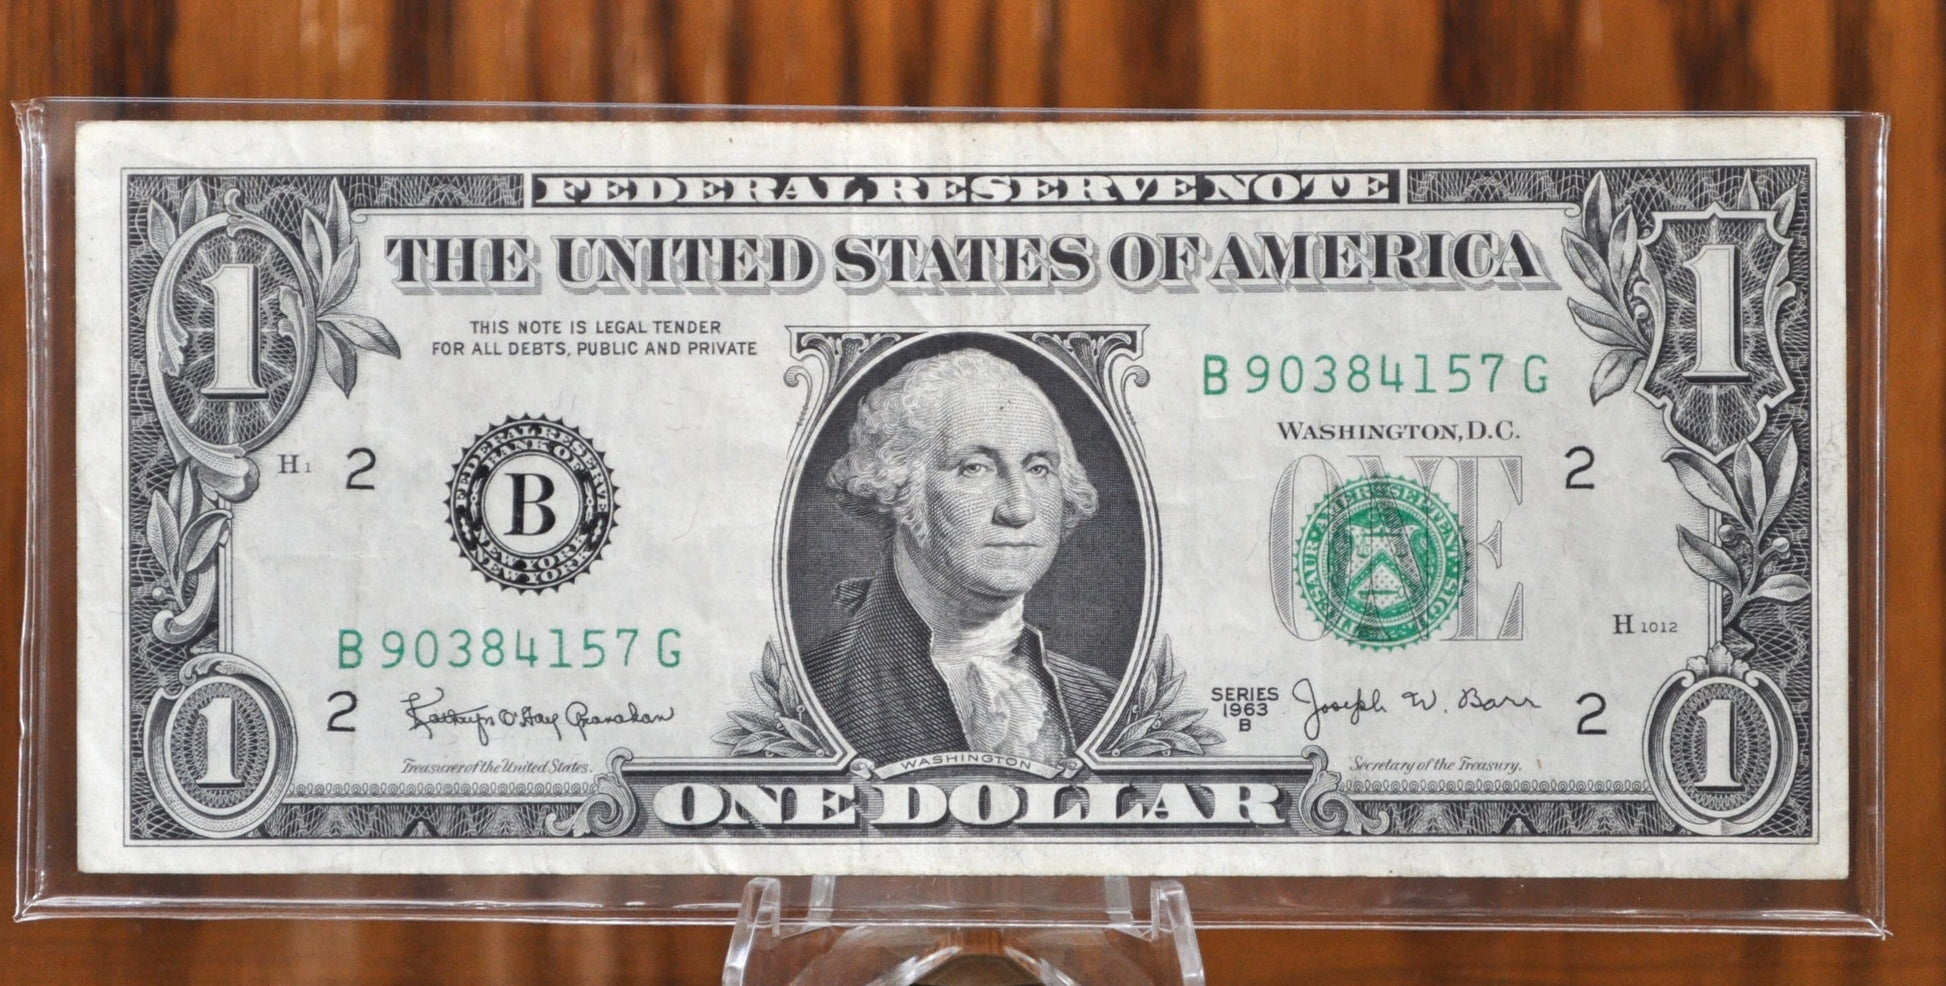 1963 1 Dollar Federal Reserve Note - Choose by Grade - 1963 One Dollar FRN - Fr#1900A - Fr 1902-L